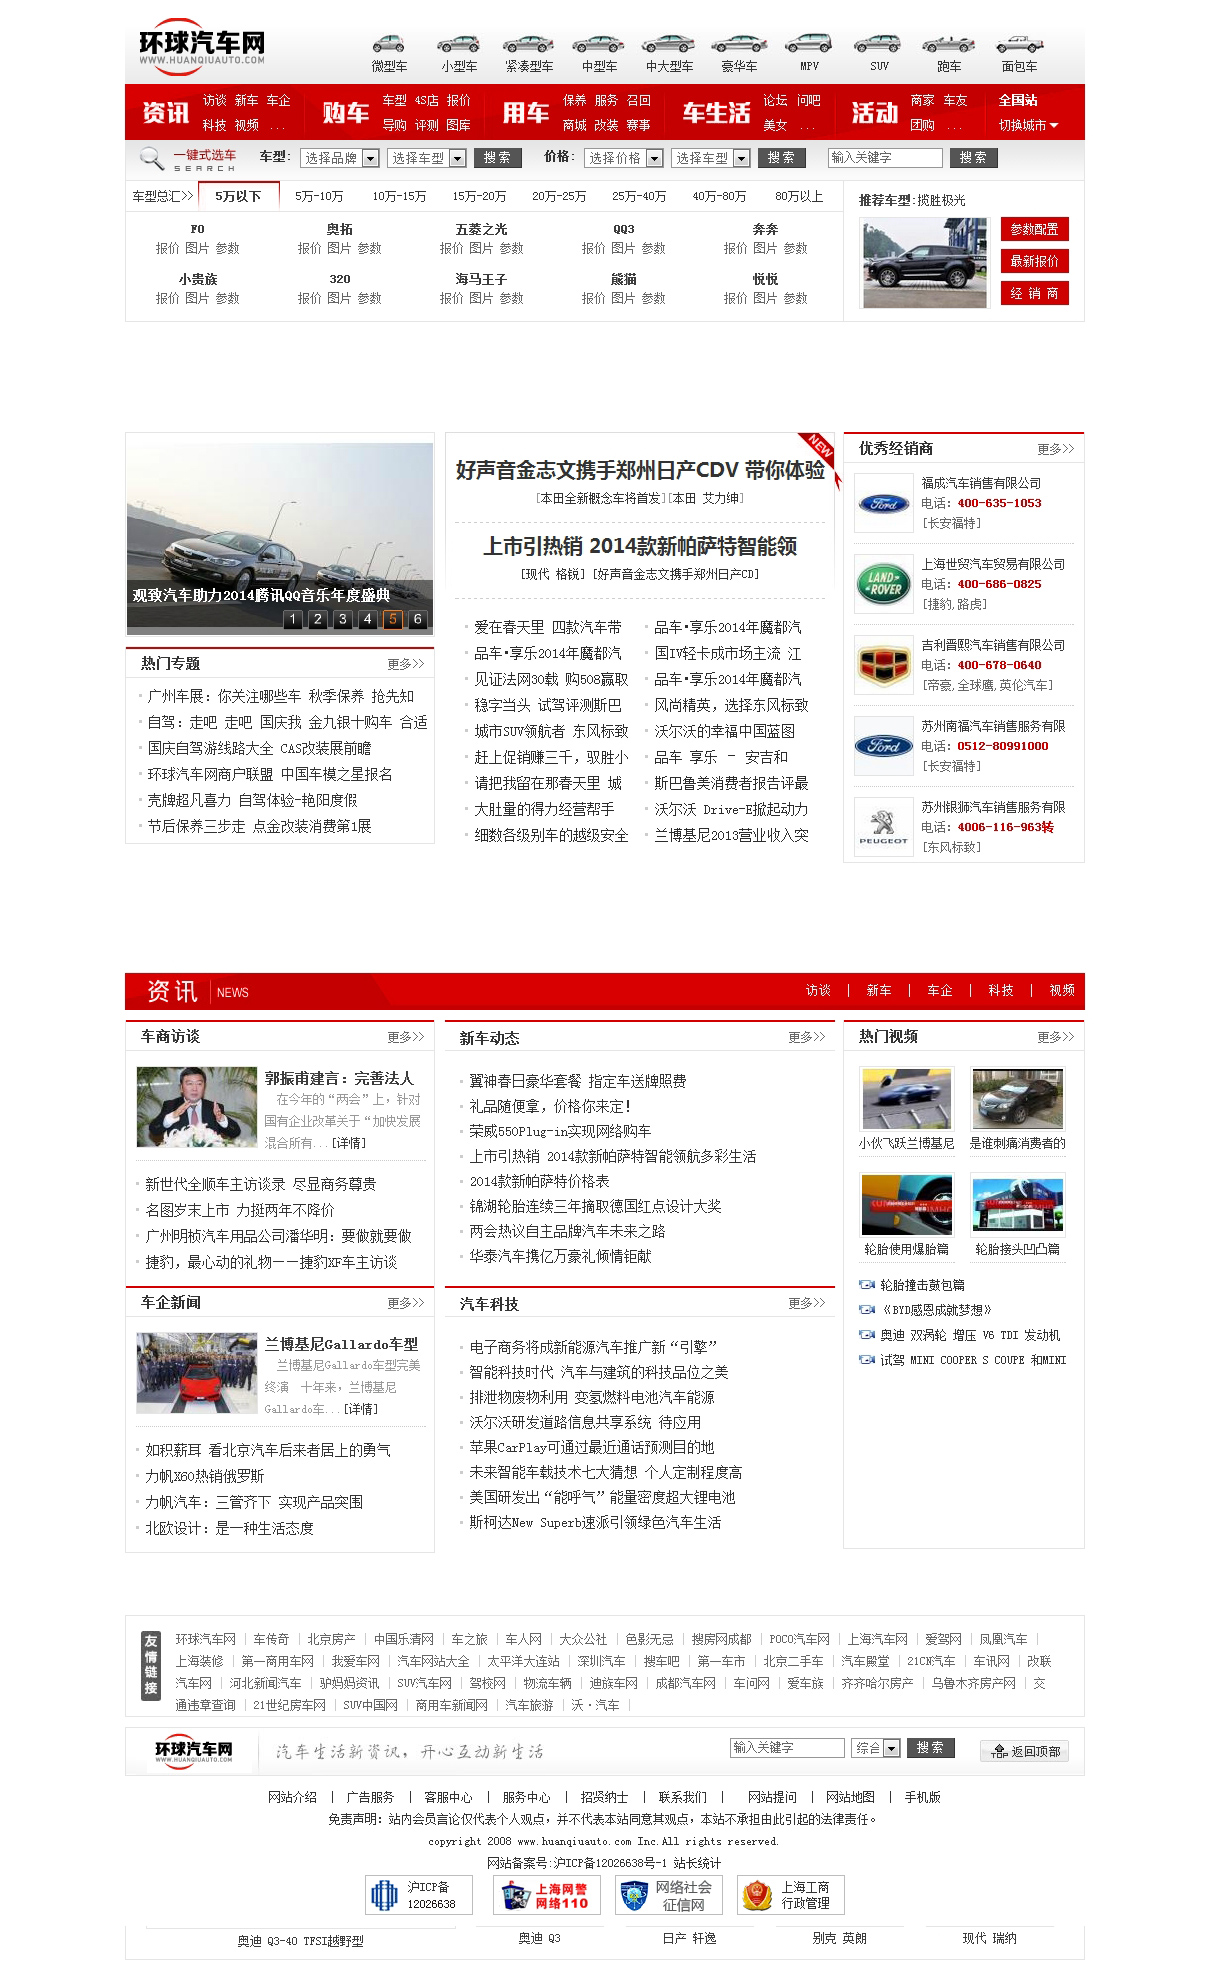 上海网站建设打造汽车行业门户型网站-环球汽车网